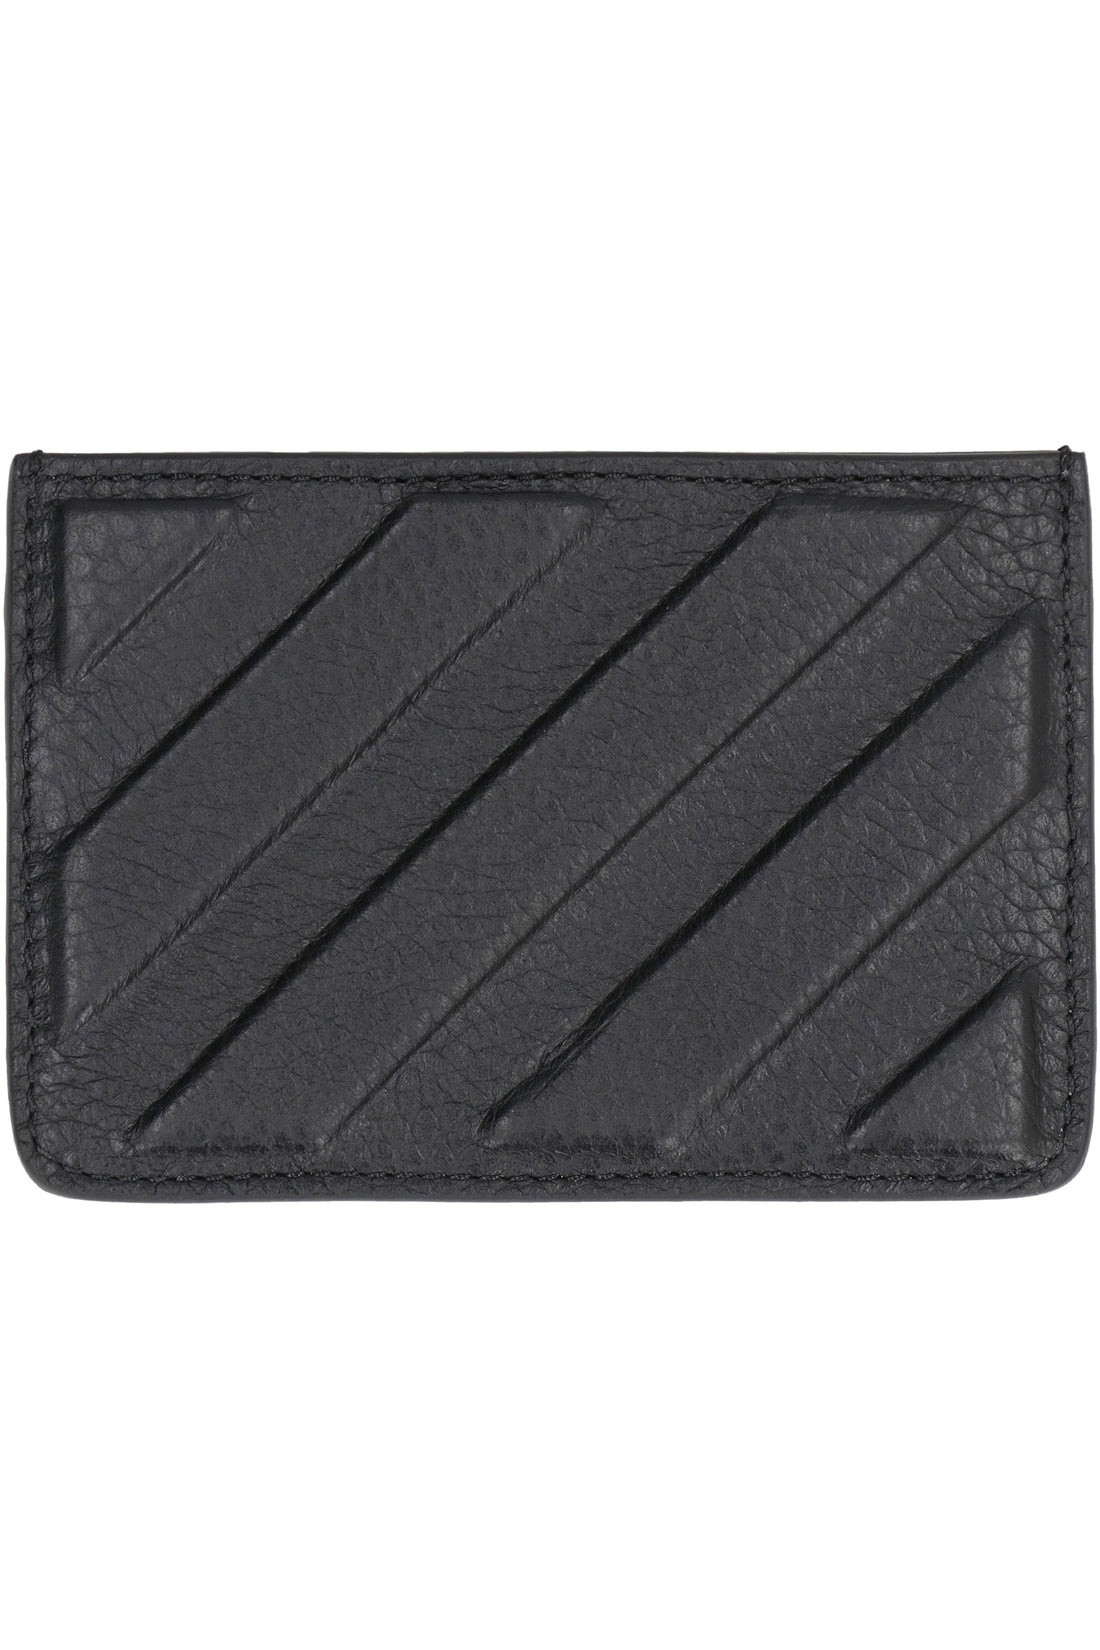 Off-White-OUTLET-SALE-Binder leather card holder-ARCHIVIST